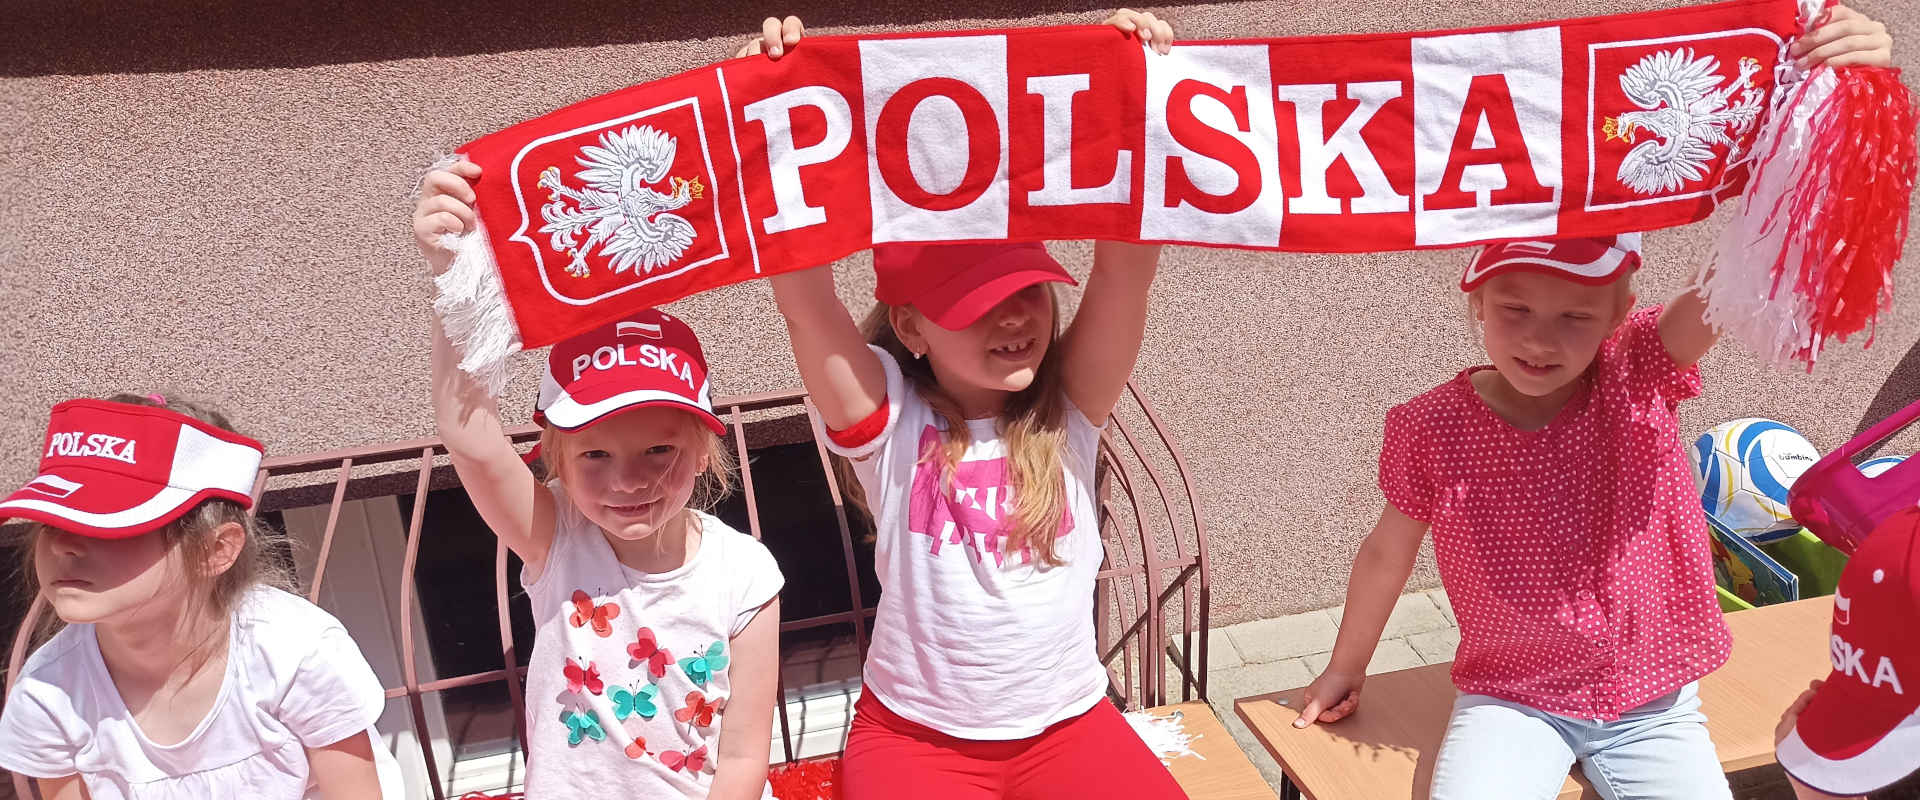 Dzieci z biało czerwonym szalikiem z napisem Polska